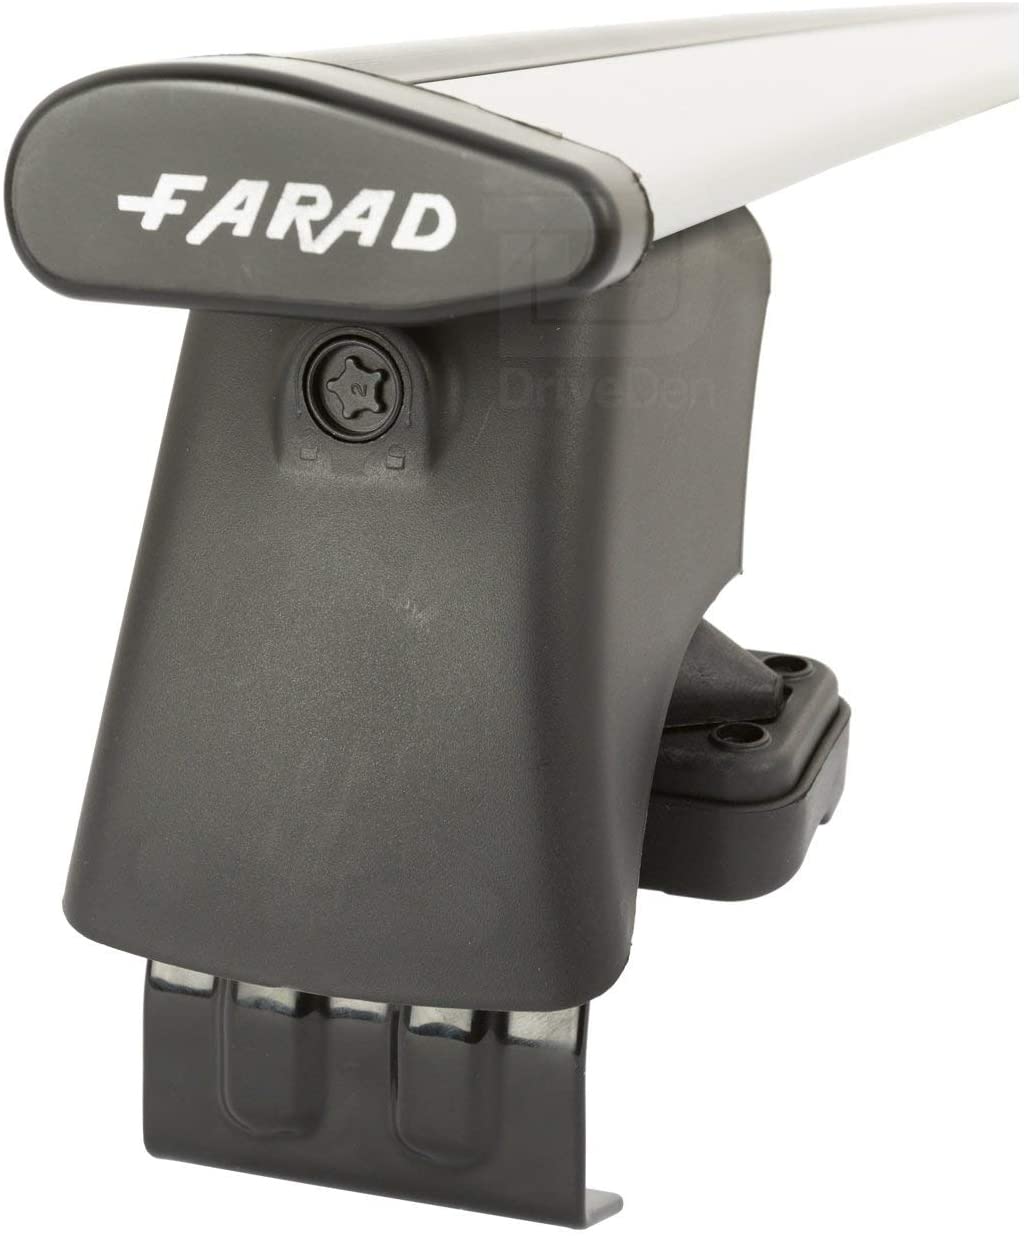 FARAD-Kit H2 per barre portatutto - Opel Astra K 2016> (senza corrimano)